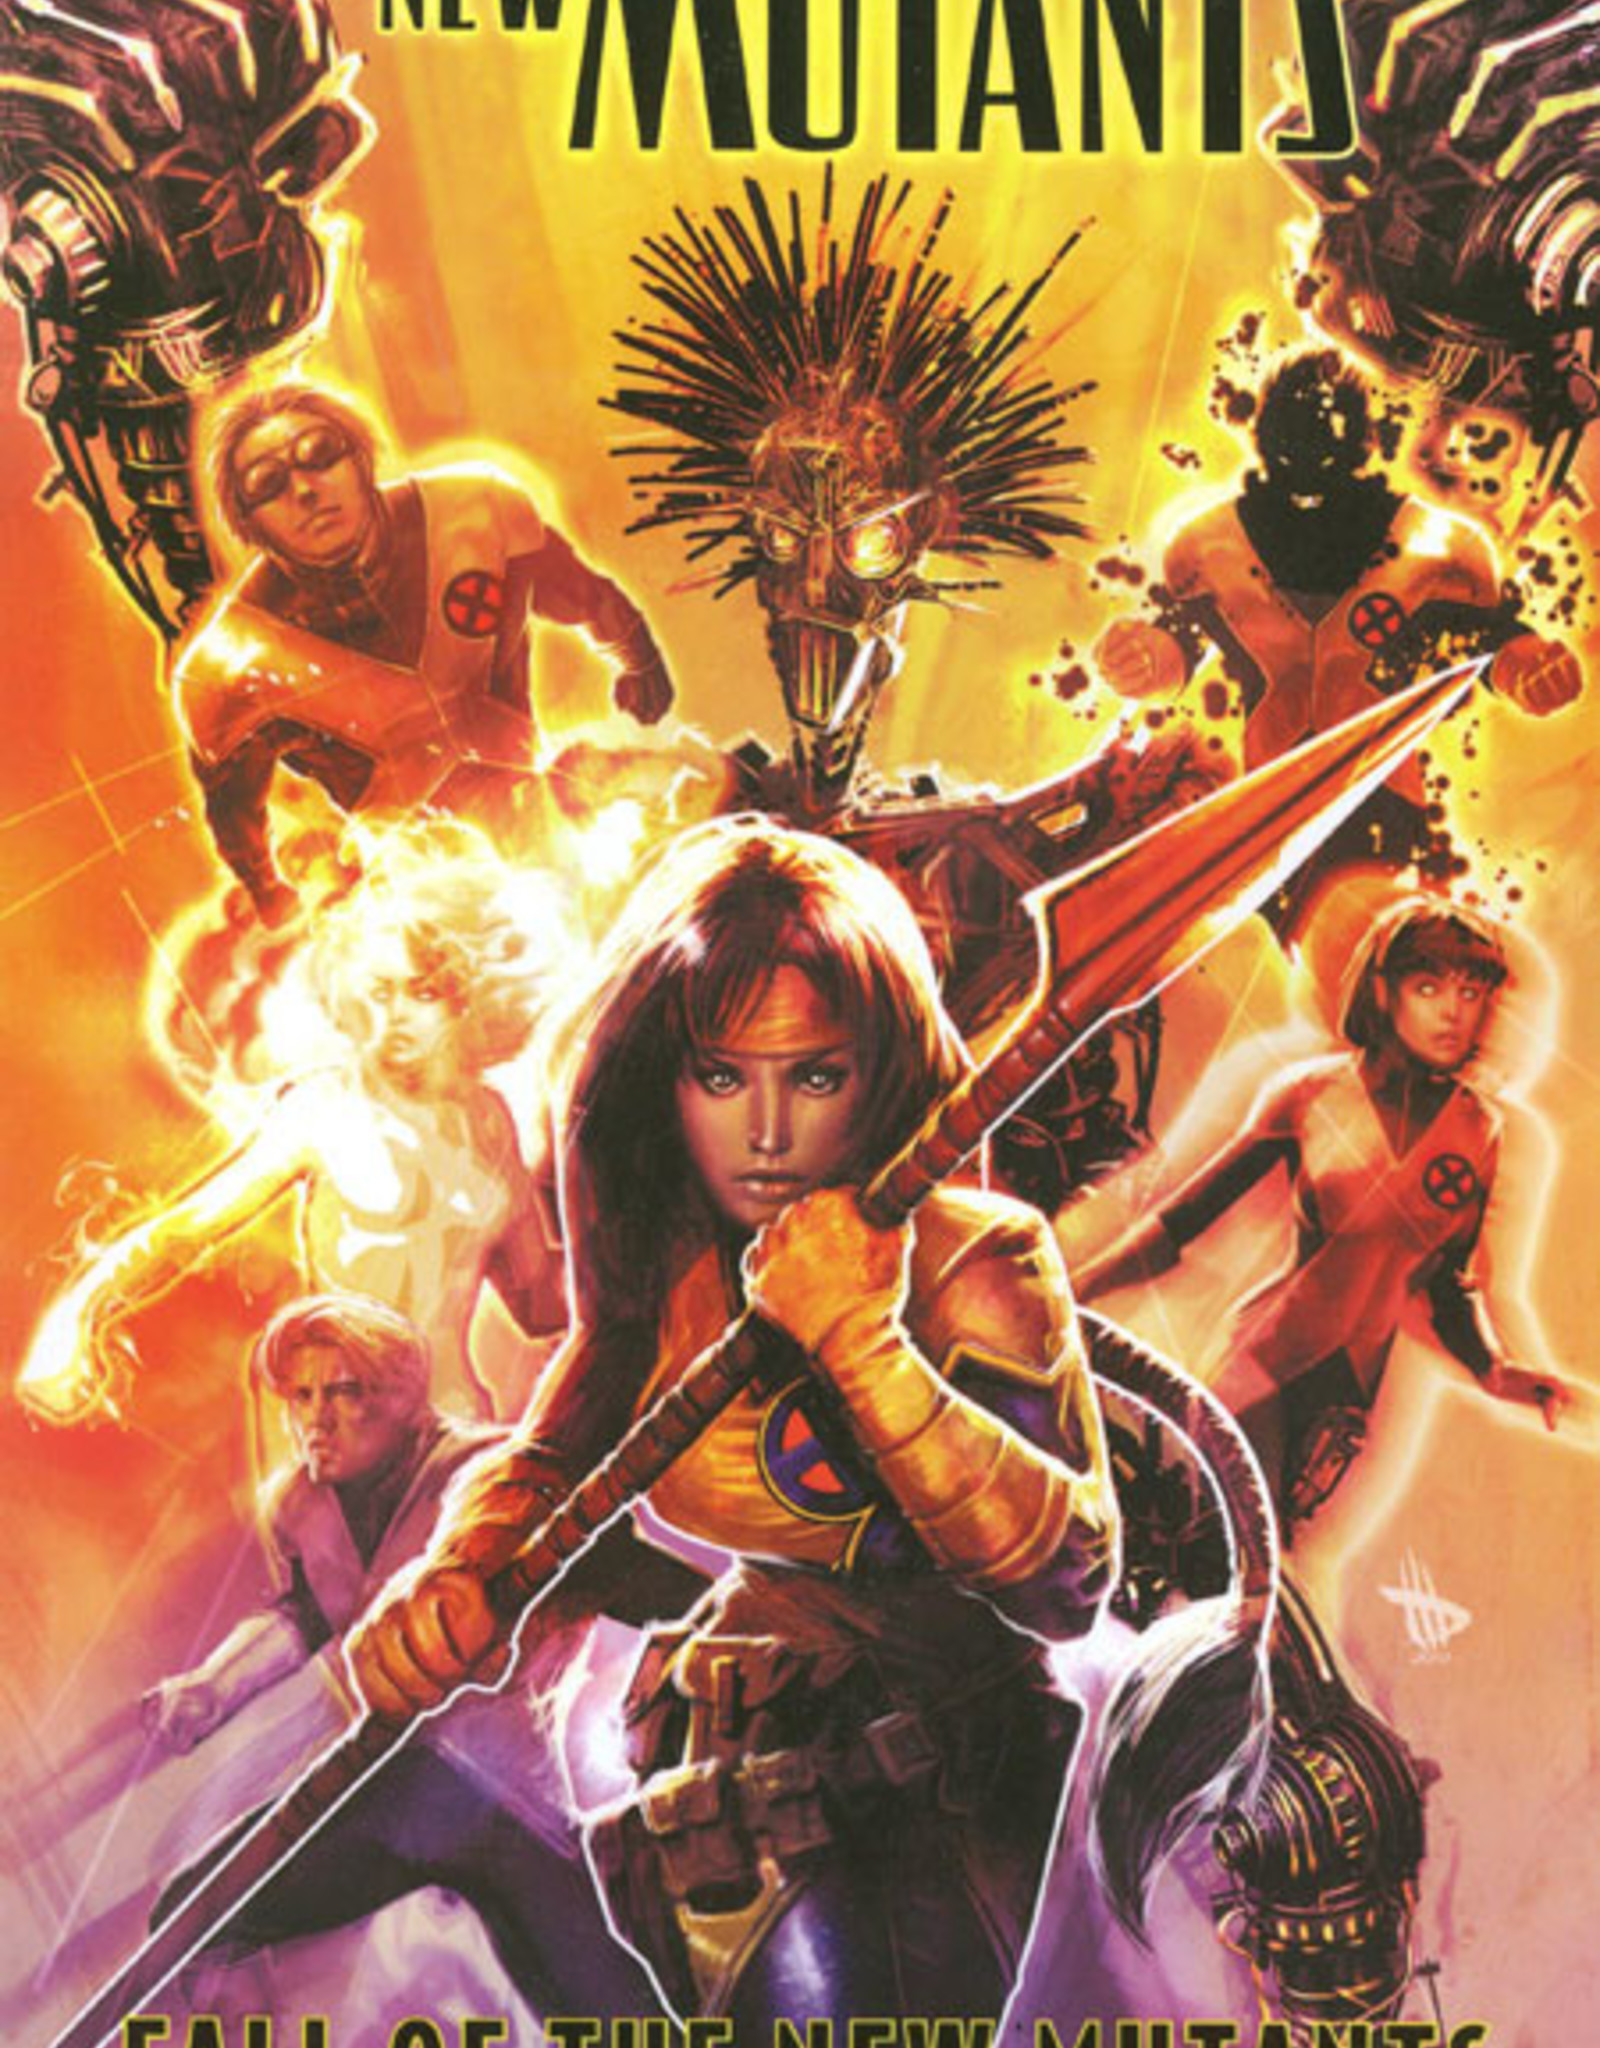 Marvel Comics New Mutants TP Volume 03 Fall of the New Mutants